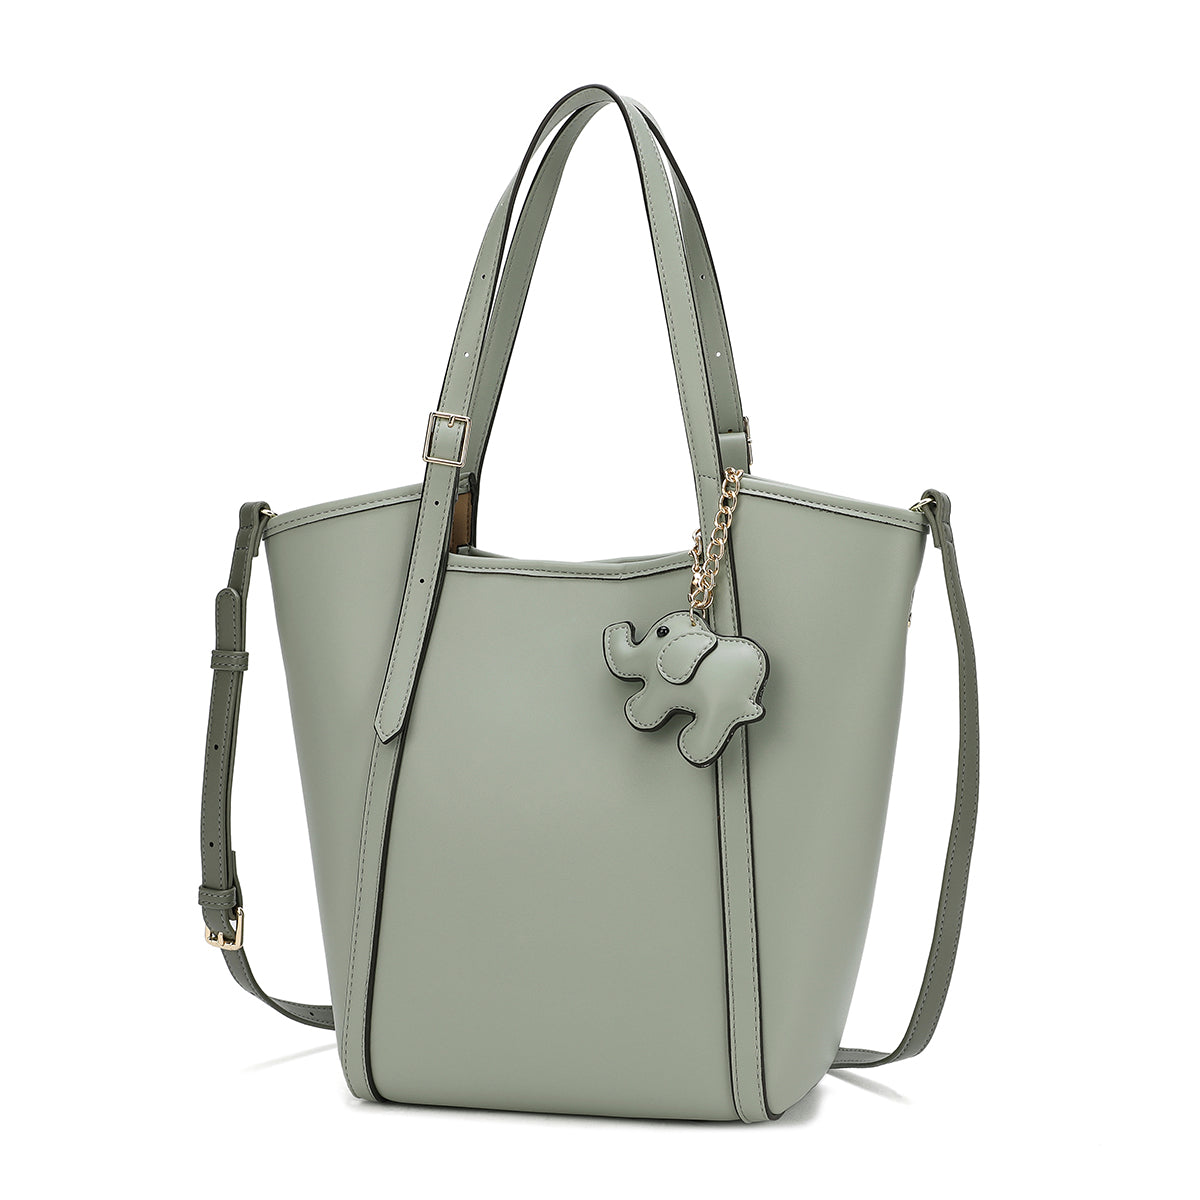 حقيبة يد نسائية واسعة بتصميم كلاسيكي مميز متوفرة بلونين لون اخضر